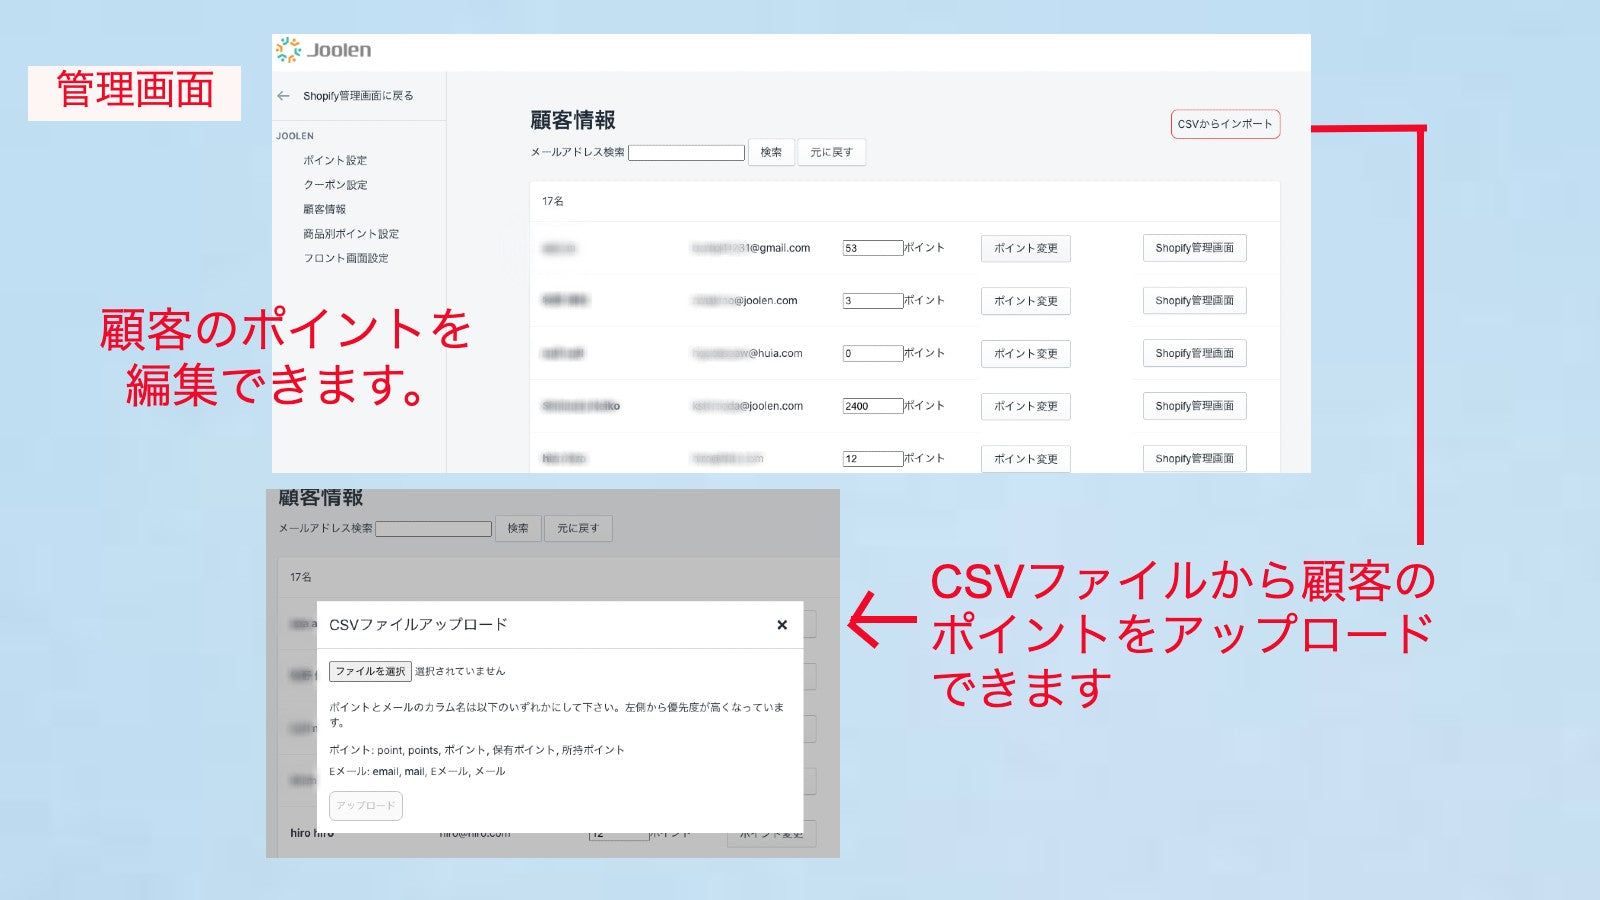 管理画面から顧客のポイントの変更ができます。また、CSVファイルからポイントを取り込むことができます。